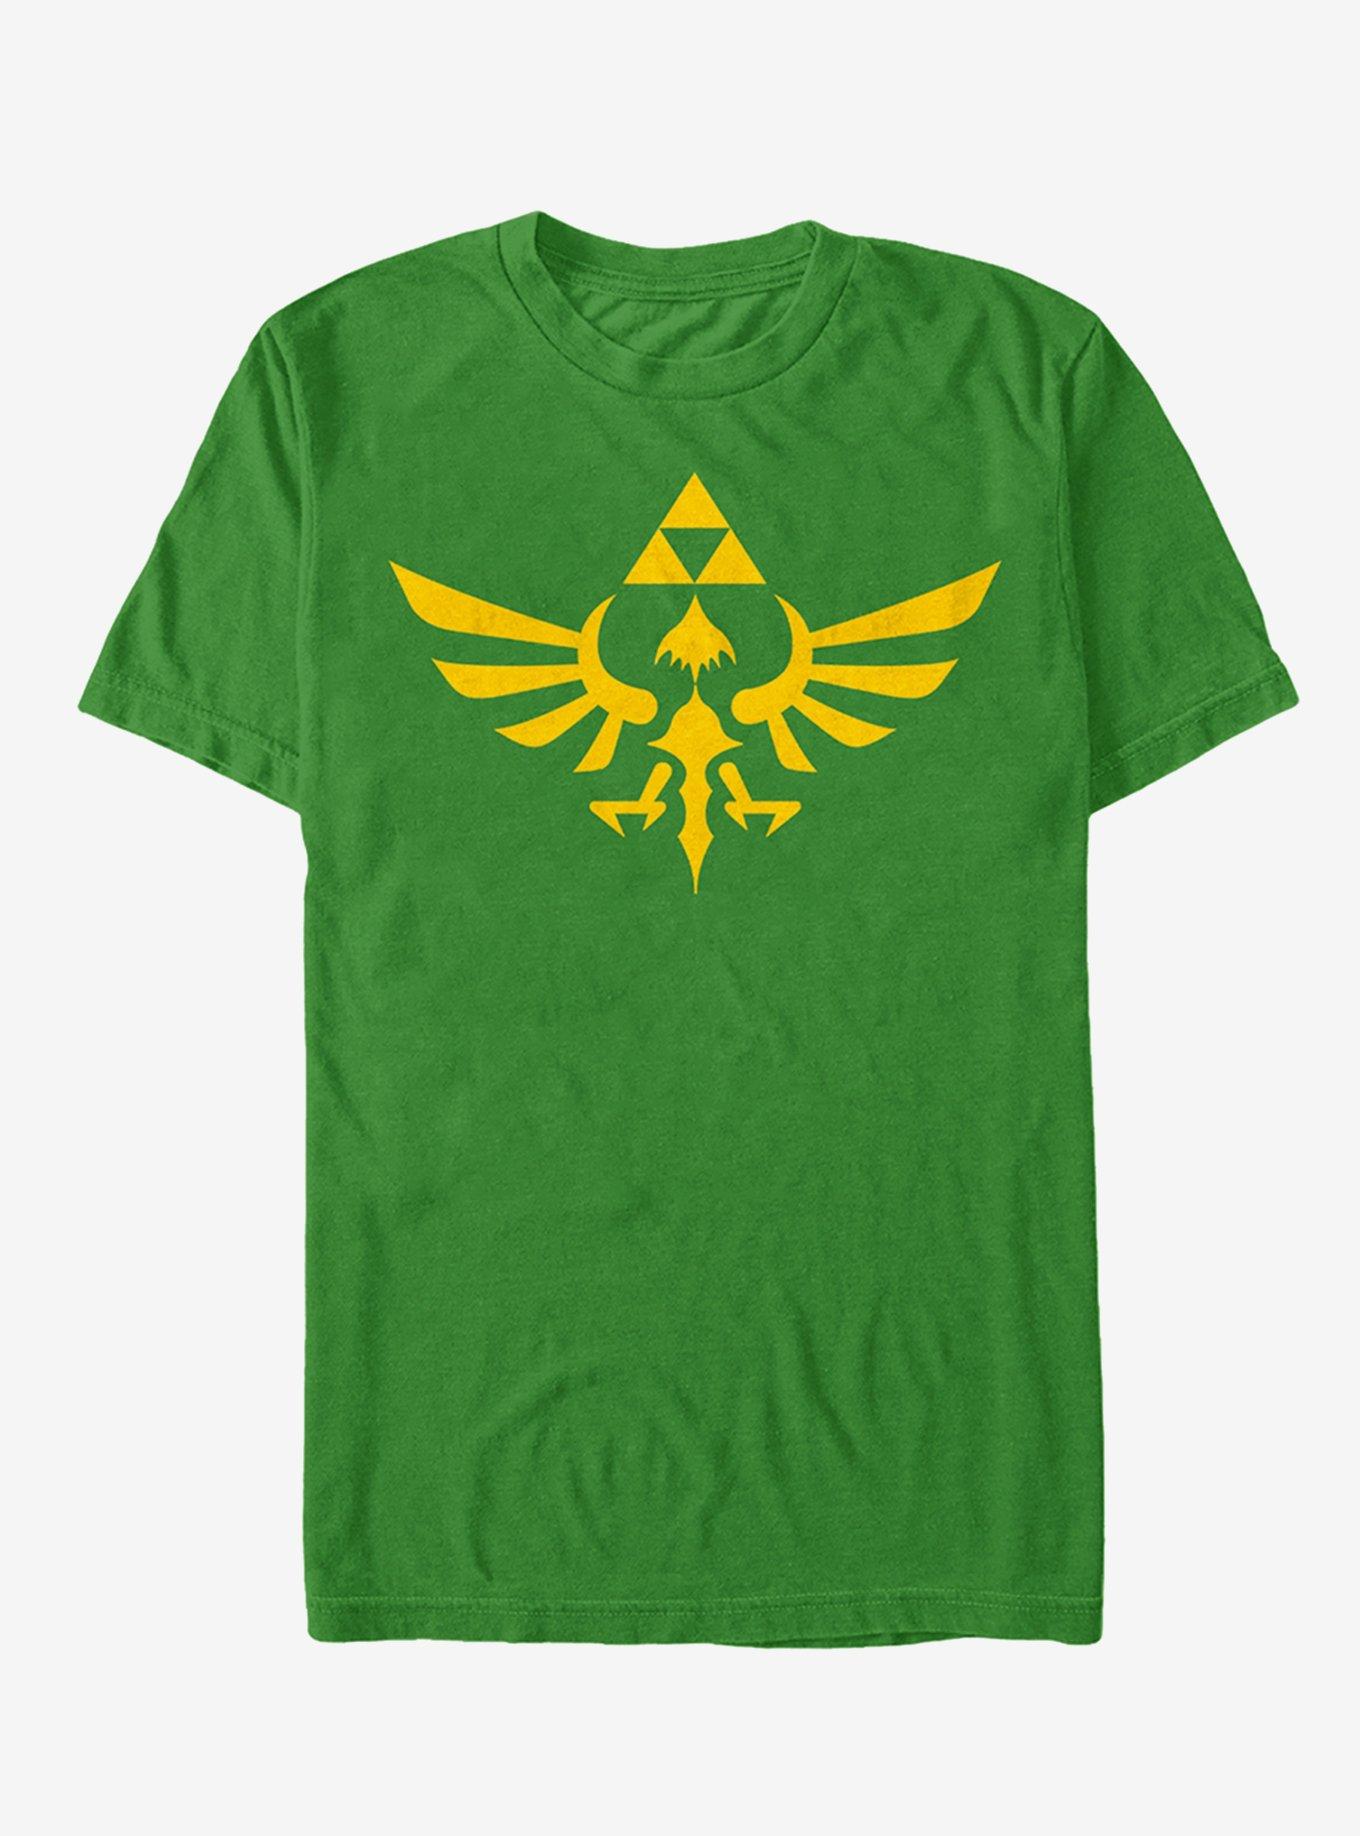 Extra Soft The Legend of Zelda Triumphant Triforce T-Shirt, KELLY, hi-res